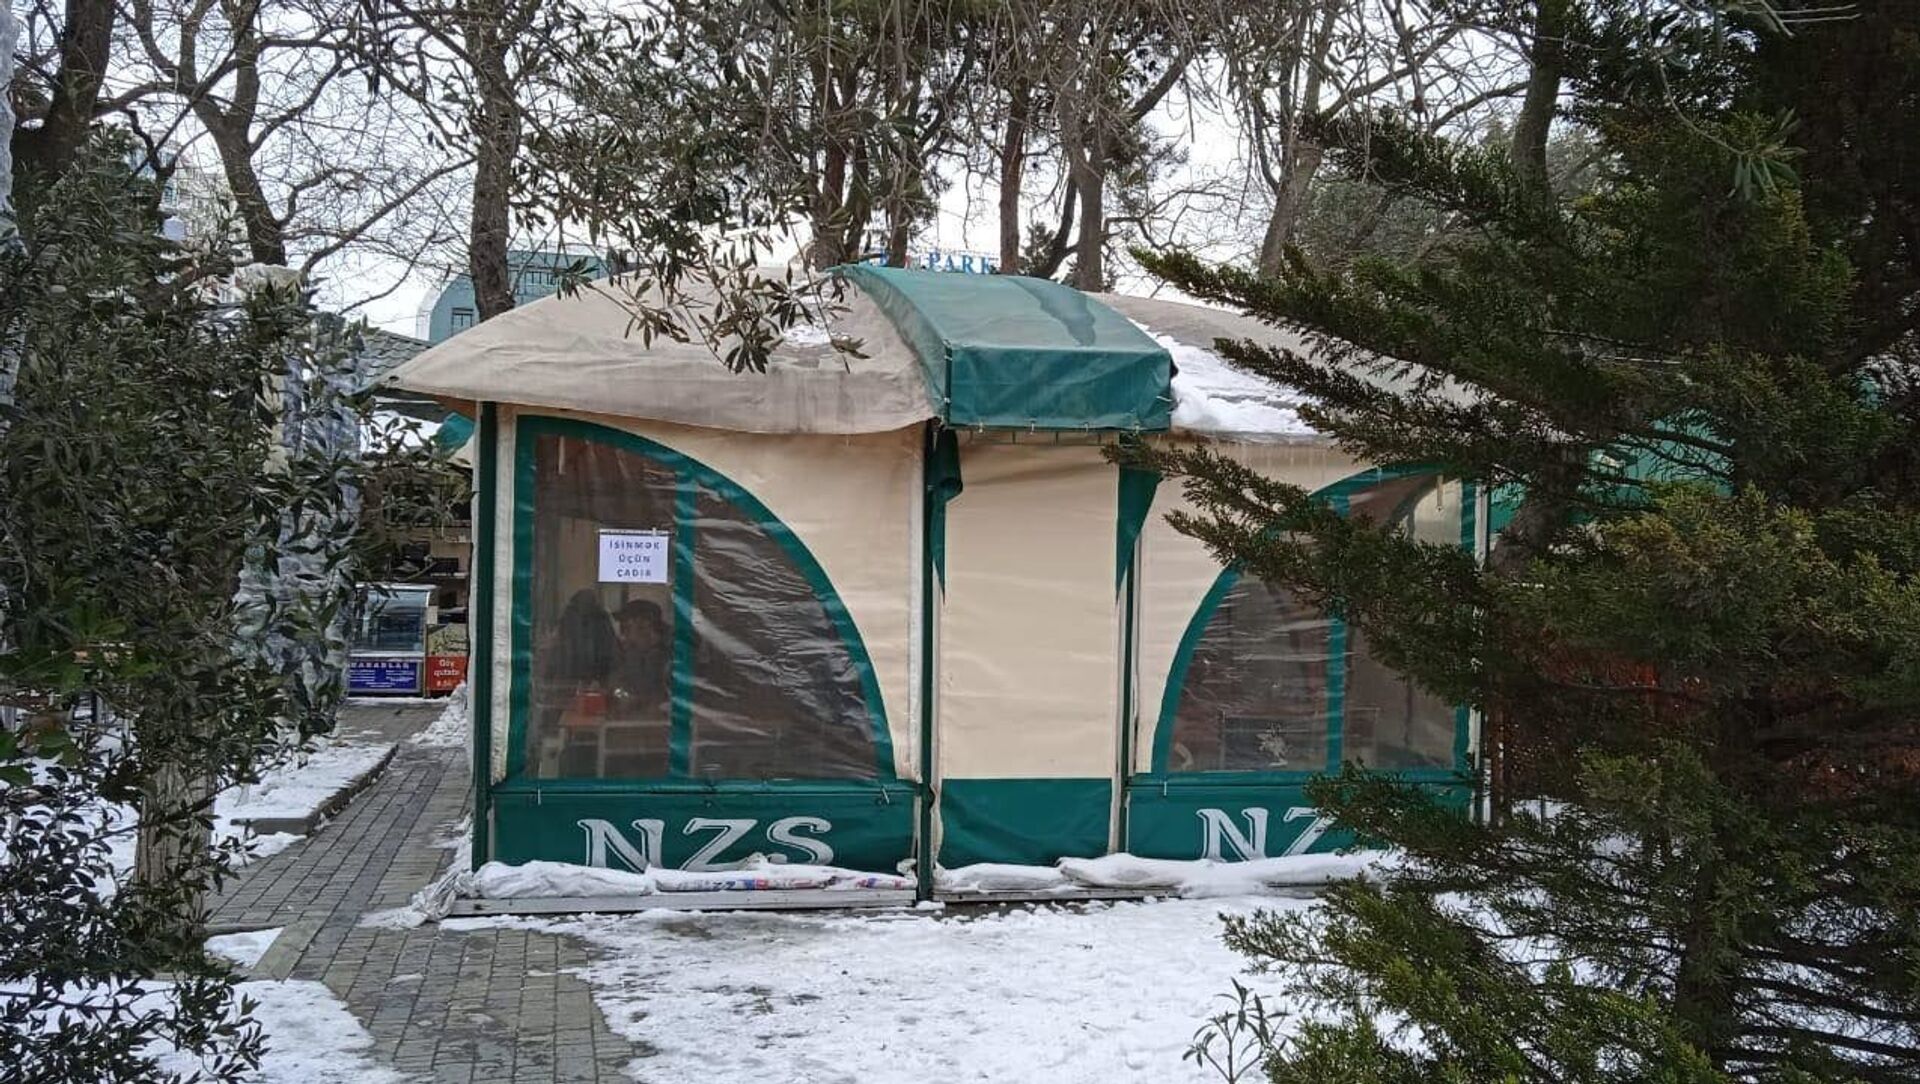 İsinmək üçün çadır - Sputnik Azərbaycan, 1920, 25.02.2021